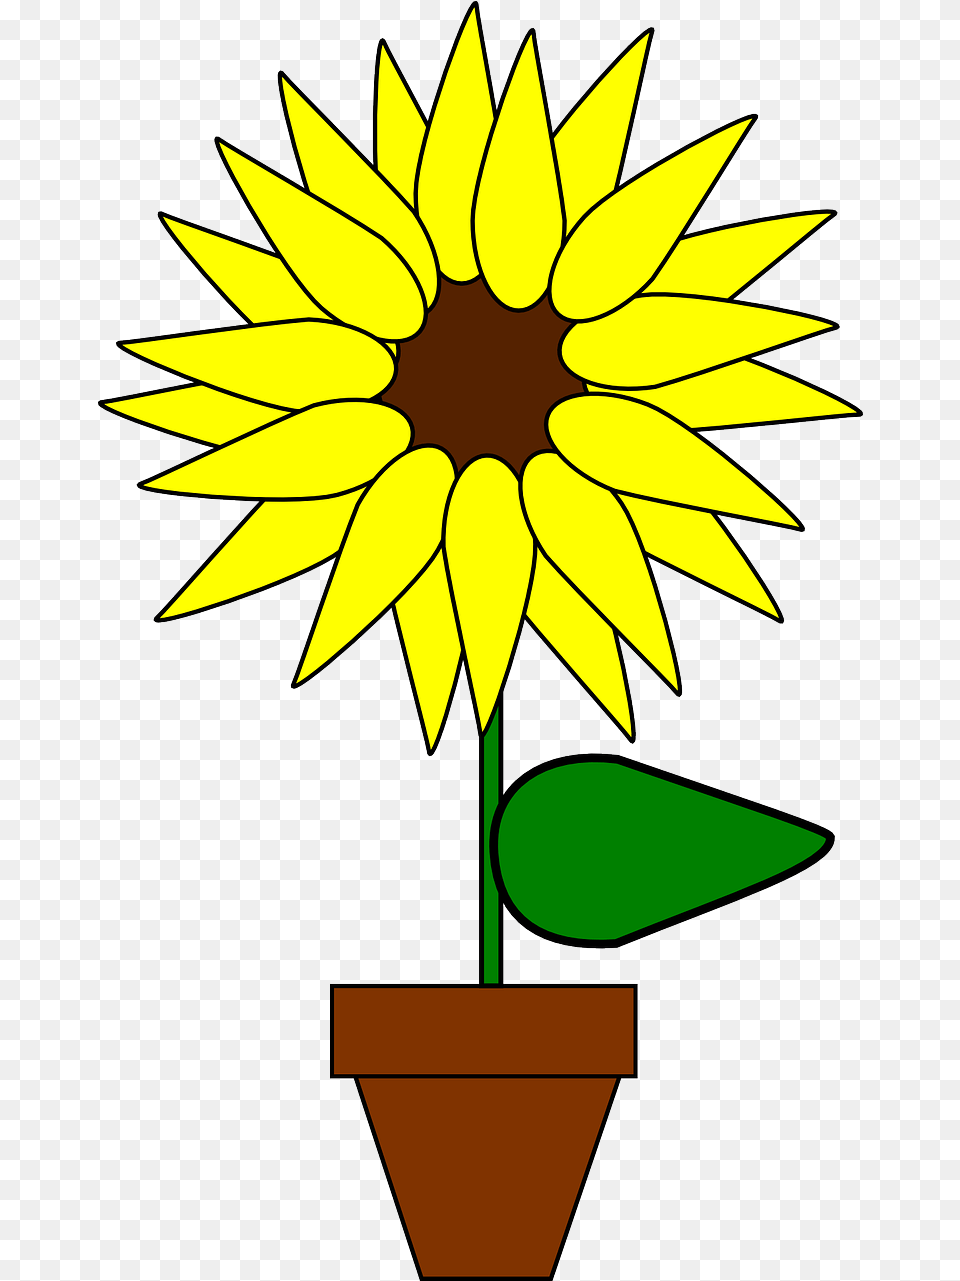 Download Hd Sunflower Clipart Girasol Gambar Bunga Matahari Dalam Pot, Flower, Plant Free Png